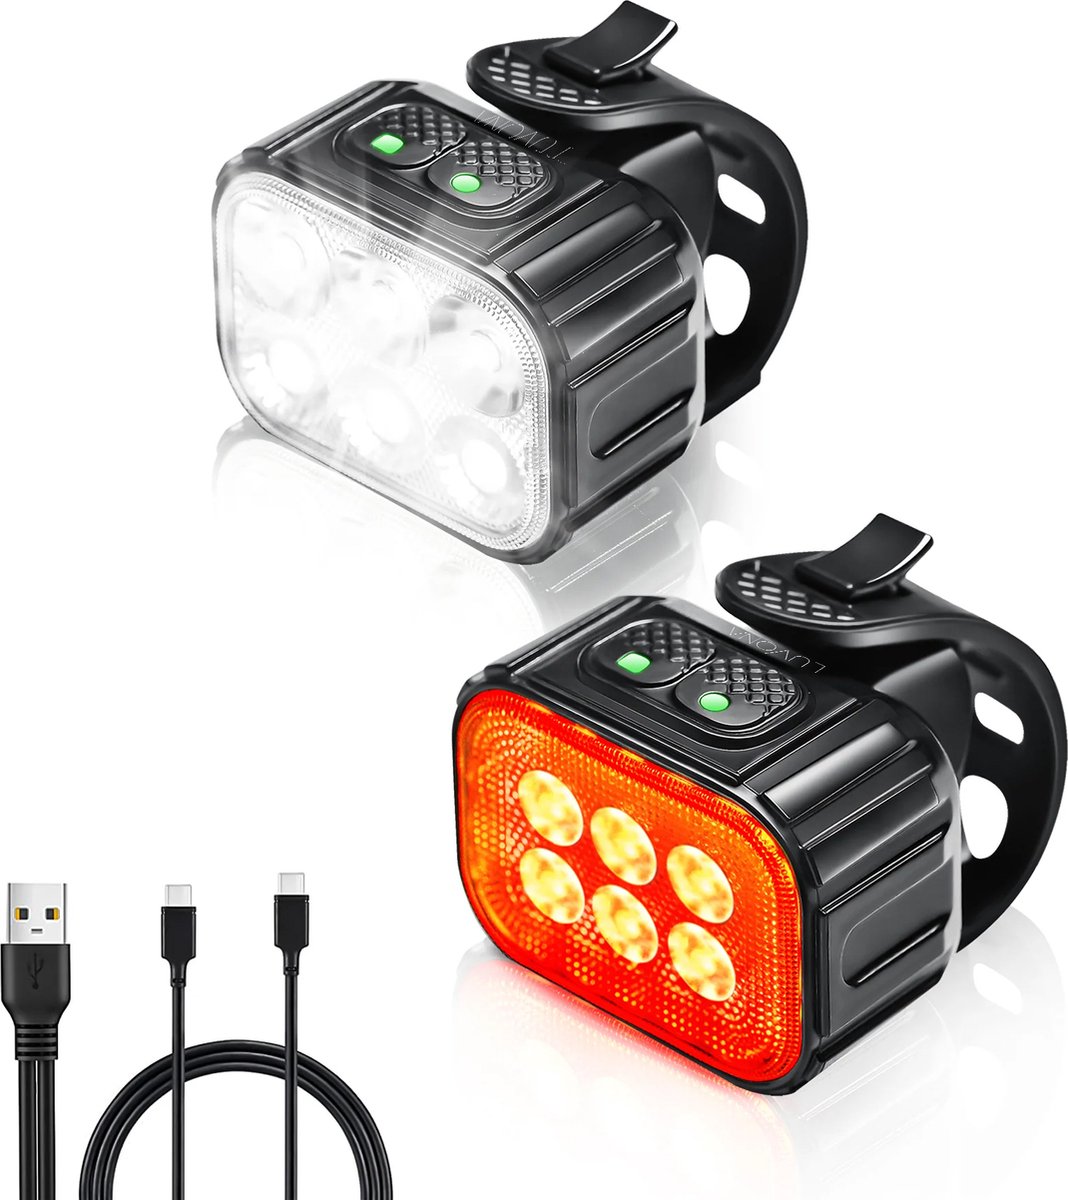 Luvona Fietslamp Set - Fietsverlichting - Voorlicht / Achterlicht - Fiets Koplamp - LED Fietslampjes Rood en Wit - Waterdicht - USB-C Oplaadbaar - luvona